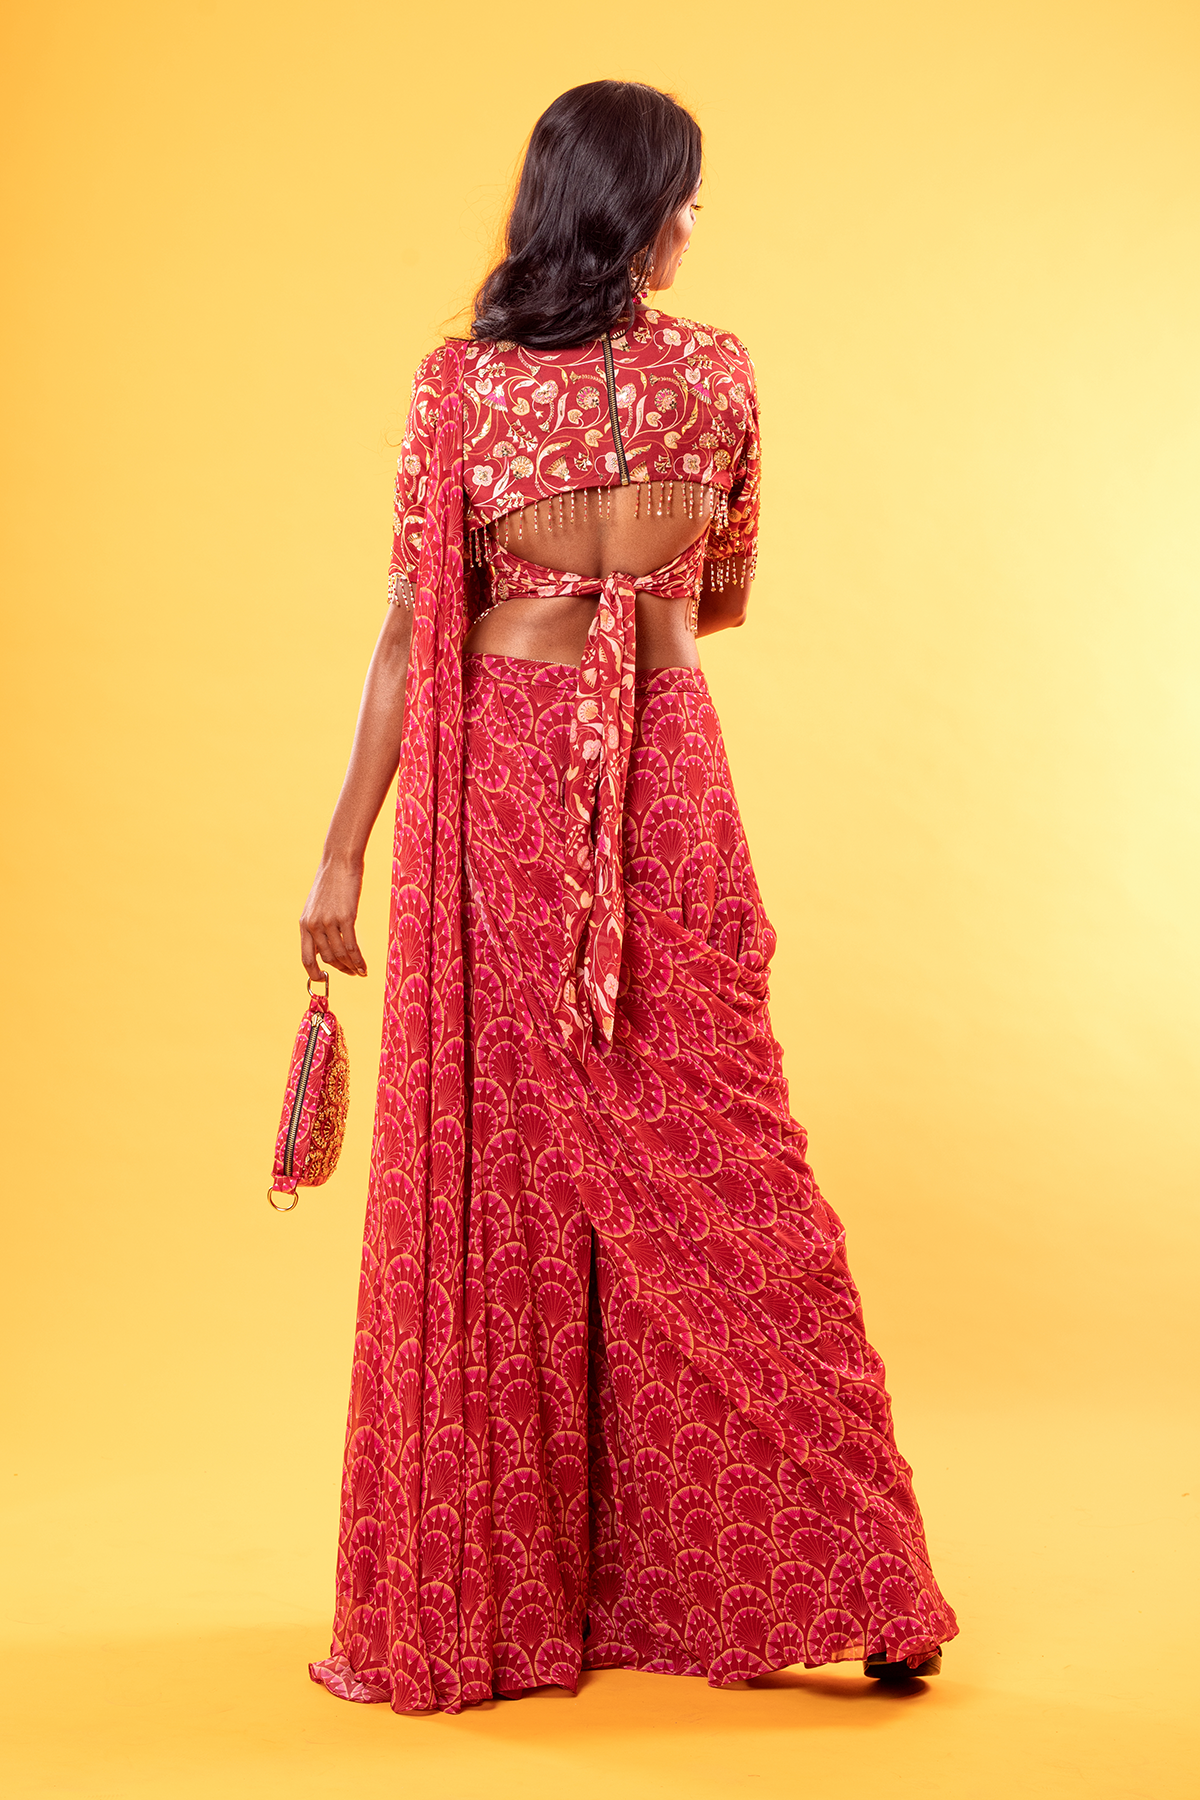 Maroon Jaal Printed & Highlighted Blouse With Fan Printed Sharara Saree & Potli Bag